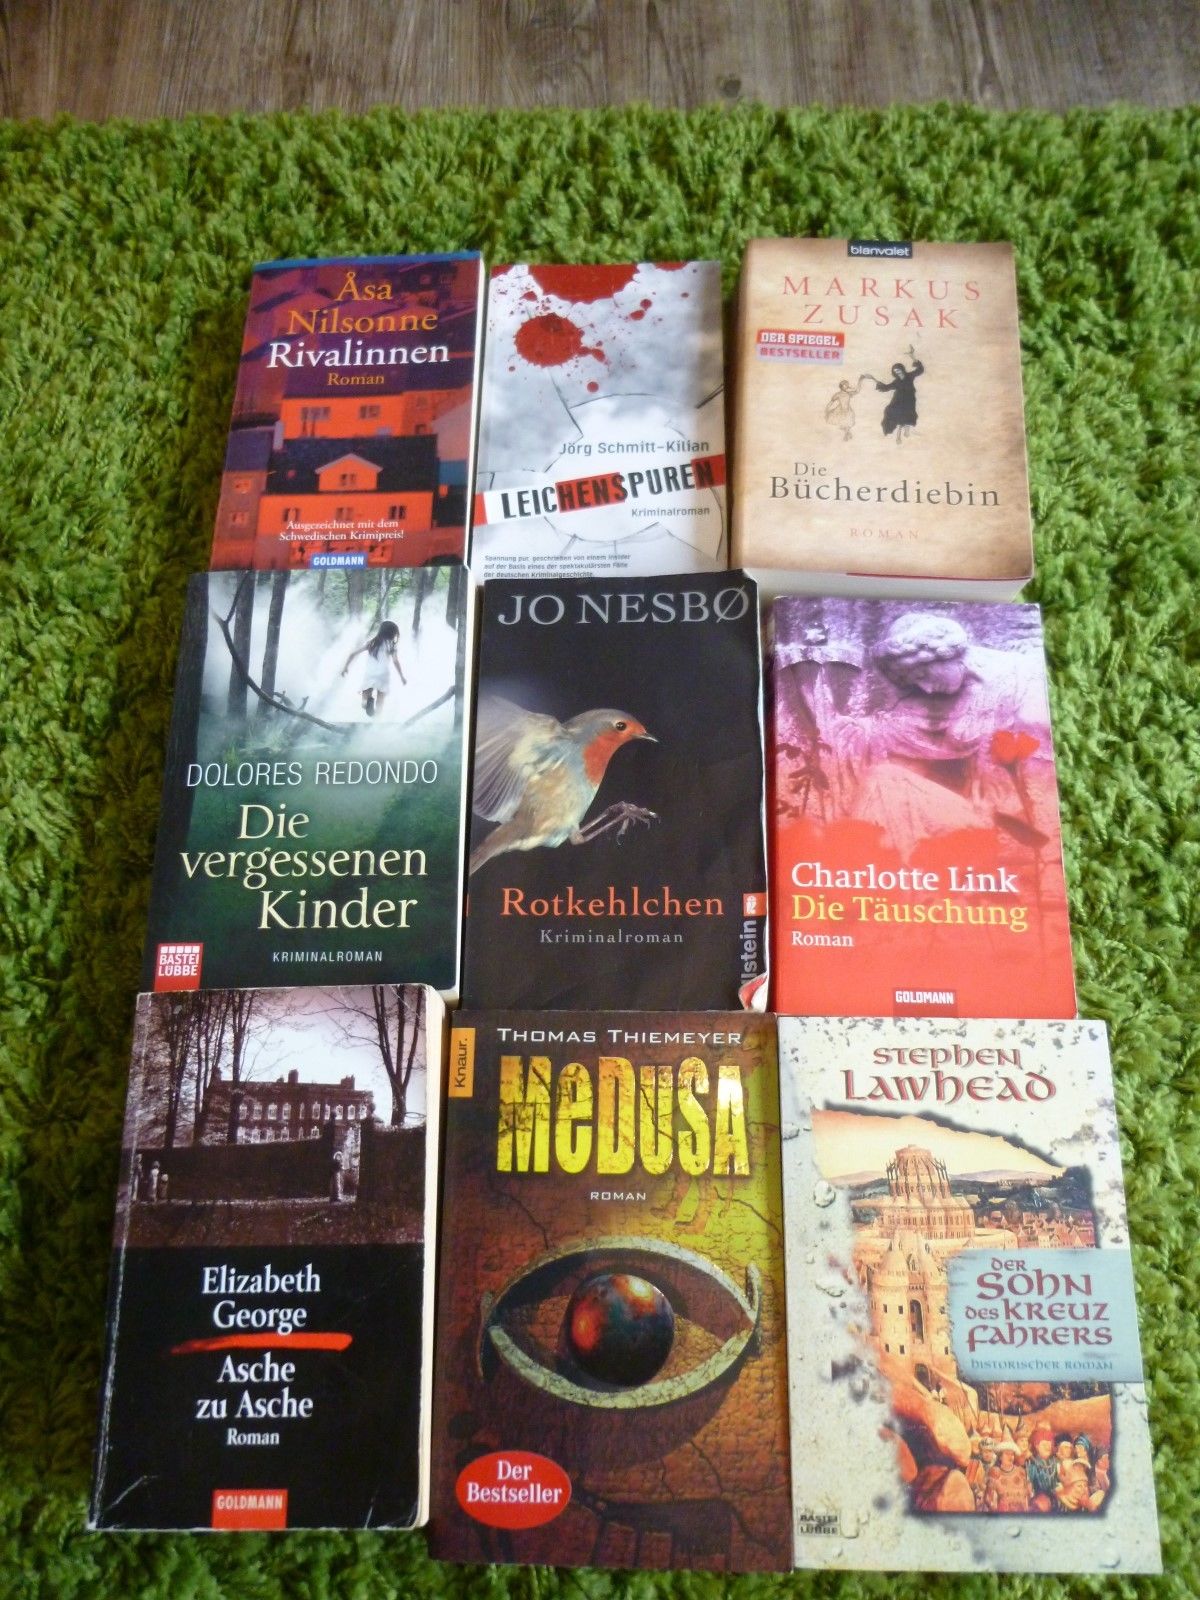 Bücherpaket - Sammlung Krimi Romane bestehend aus 9 Stk. in sehr gutem Zustand